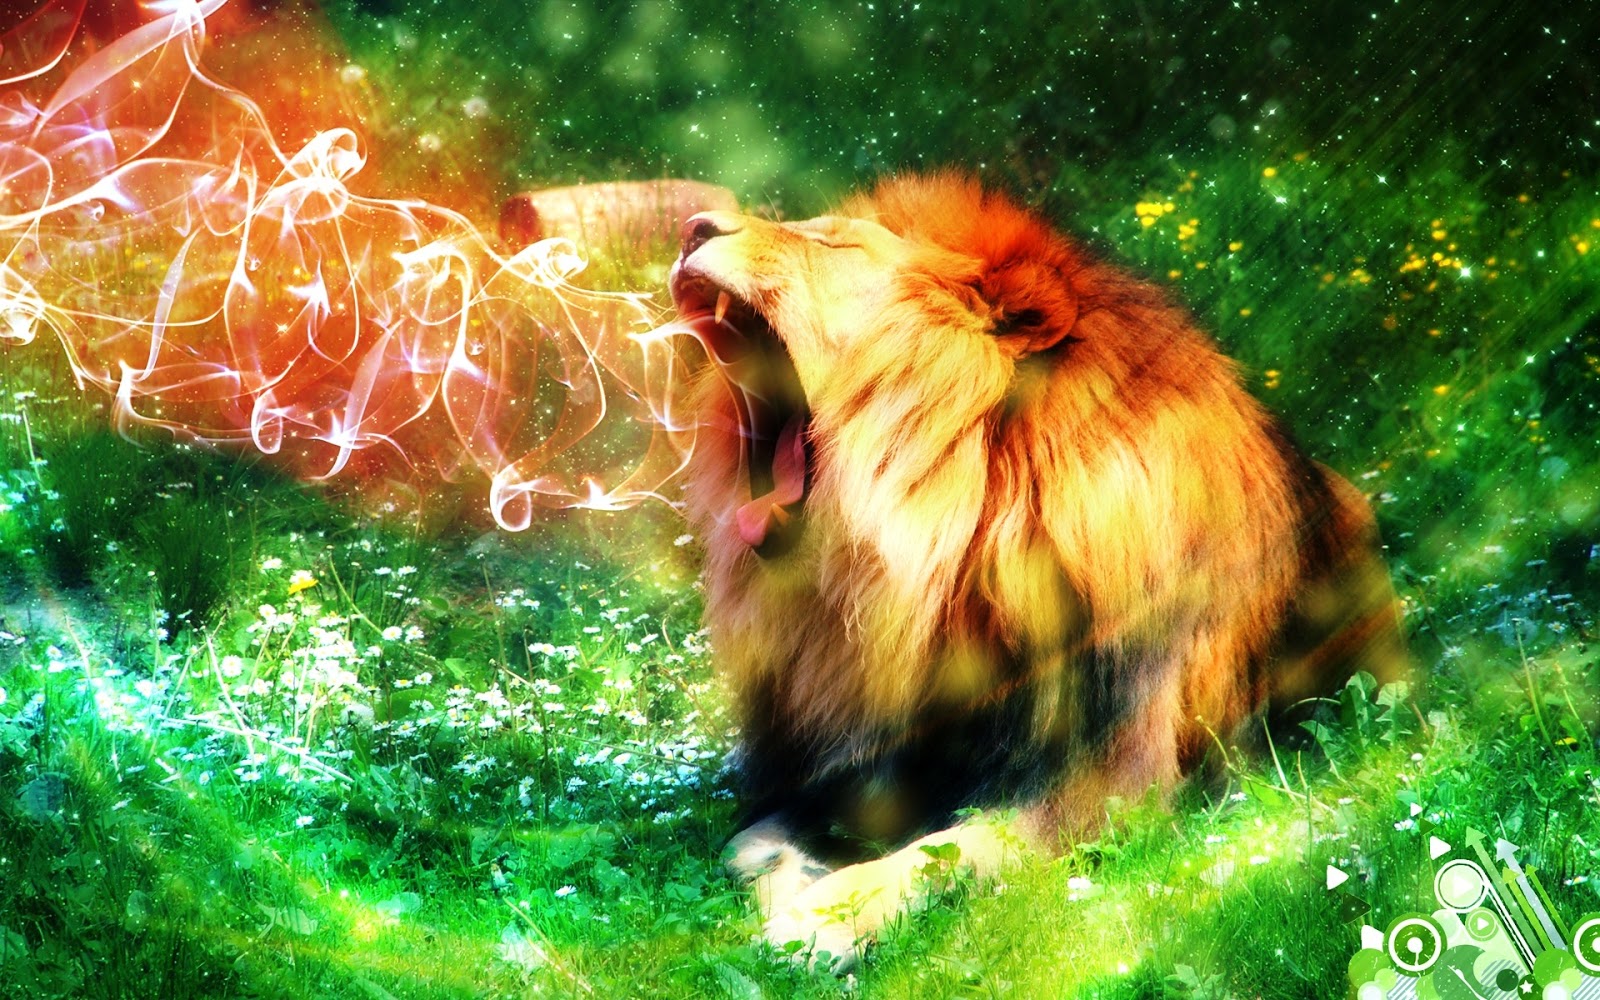 hd wallpaper hd lion roar the best top desktop lion wallpapers hd lion